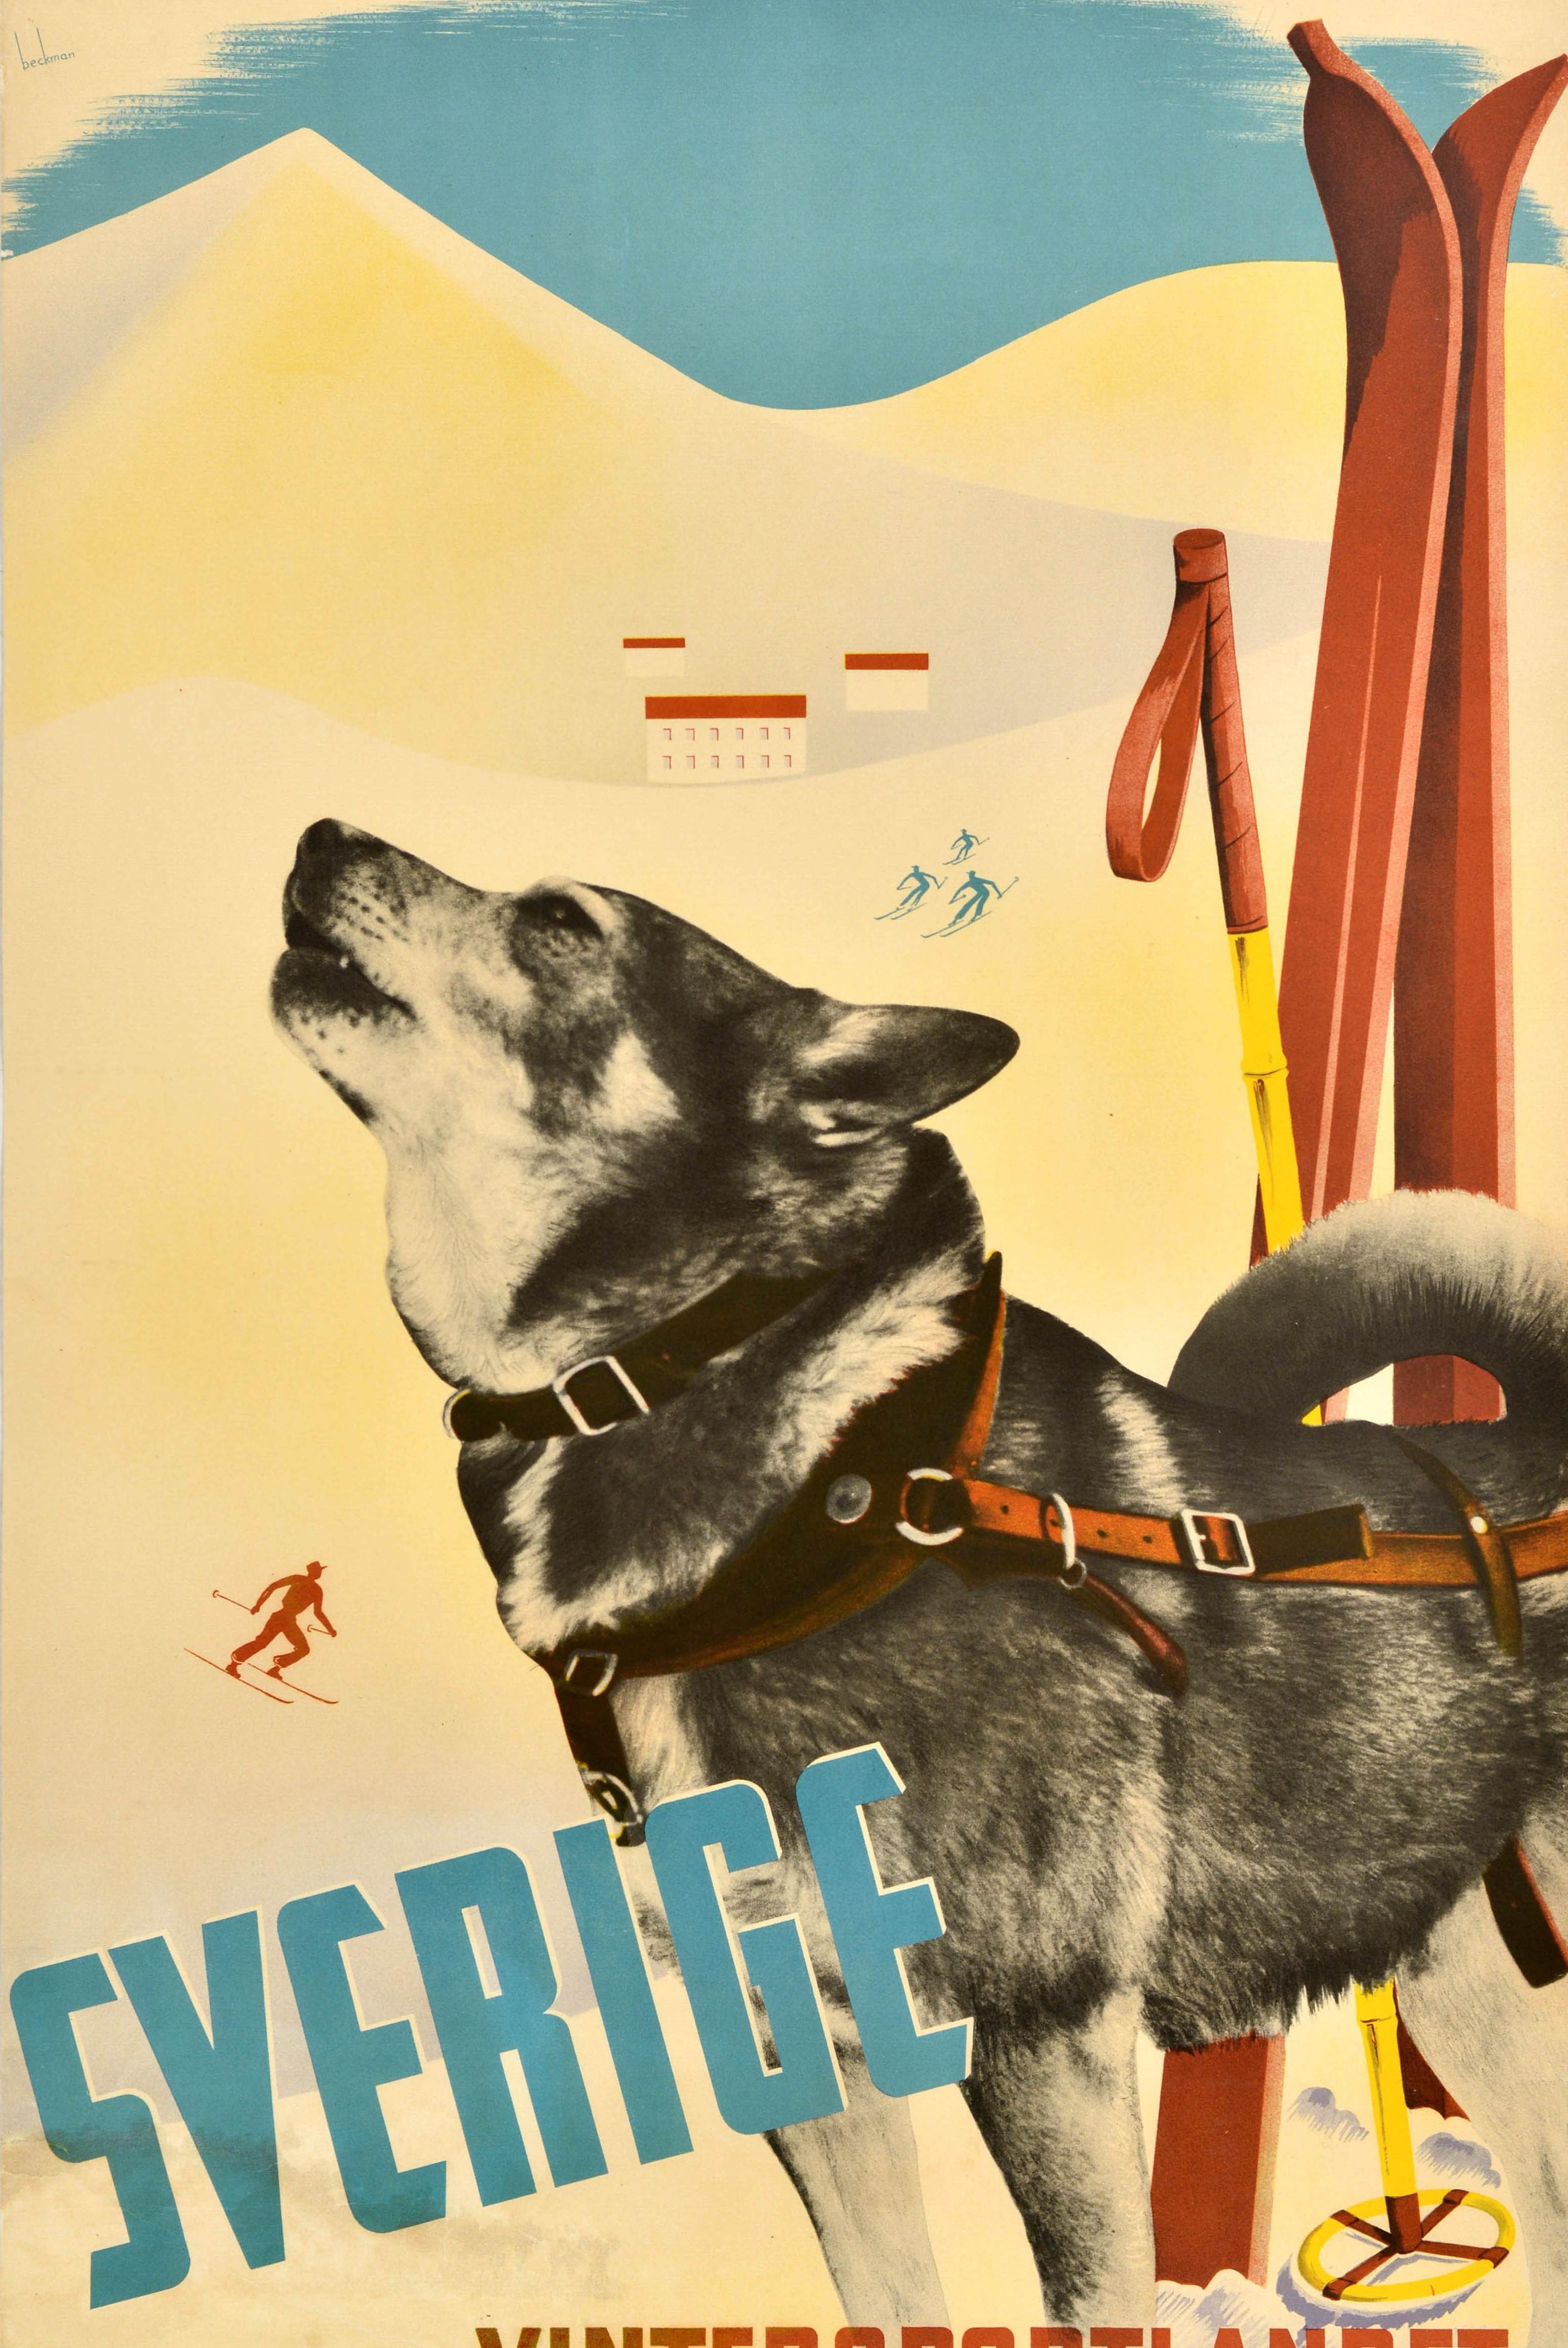 Original Vintage Ski Poster Sverige Vintersportlandet Sweden Winter Sports Dog In Good Condition For Sale In London, GB